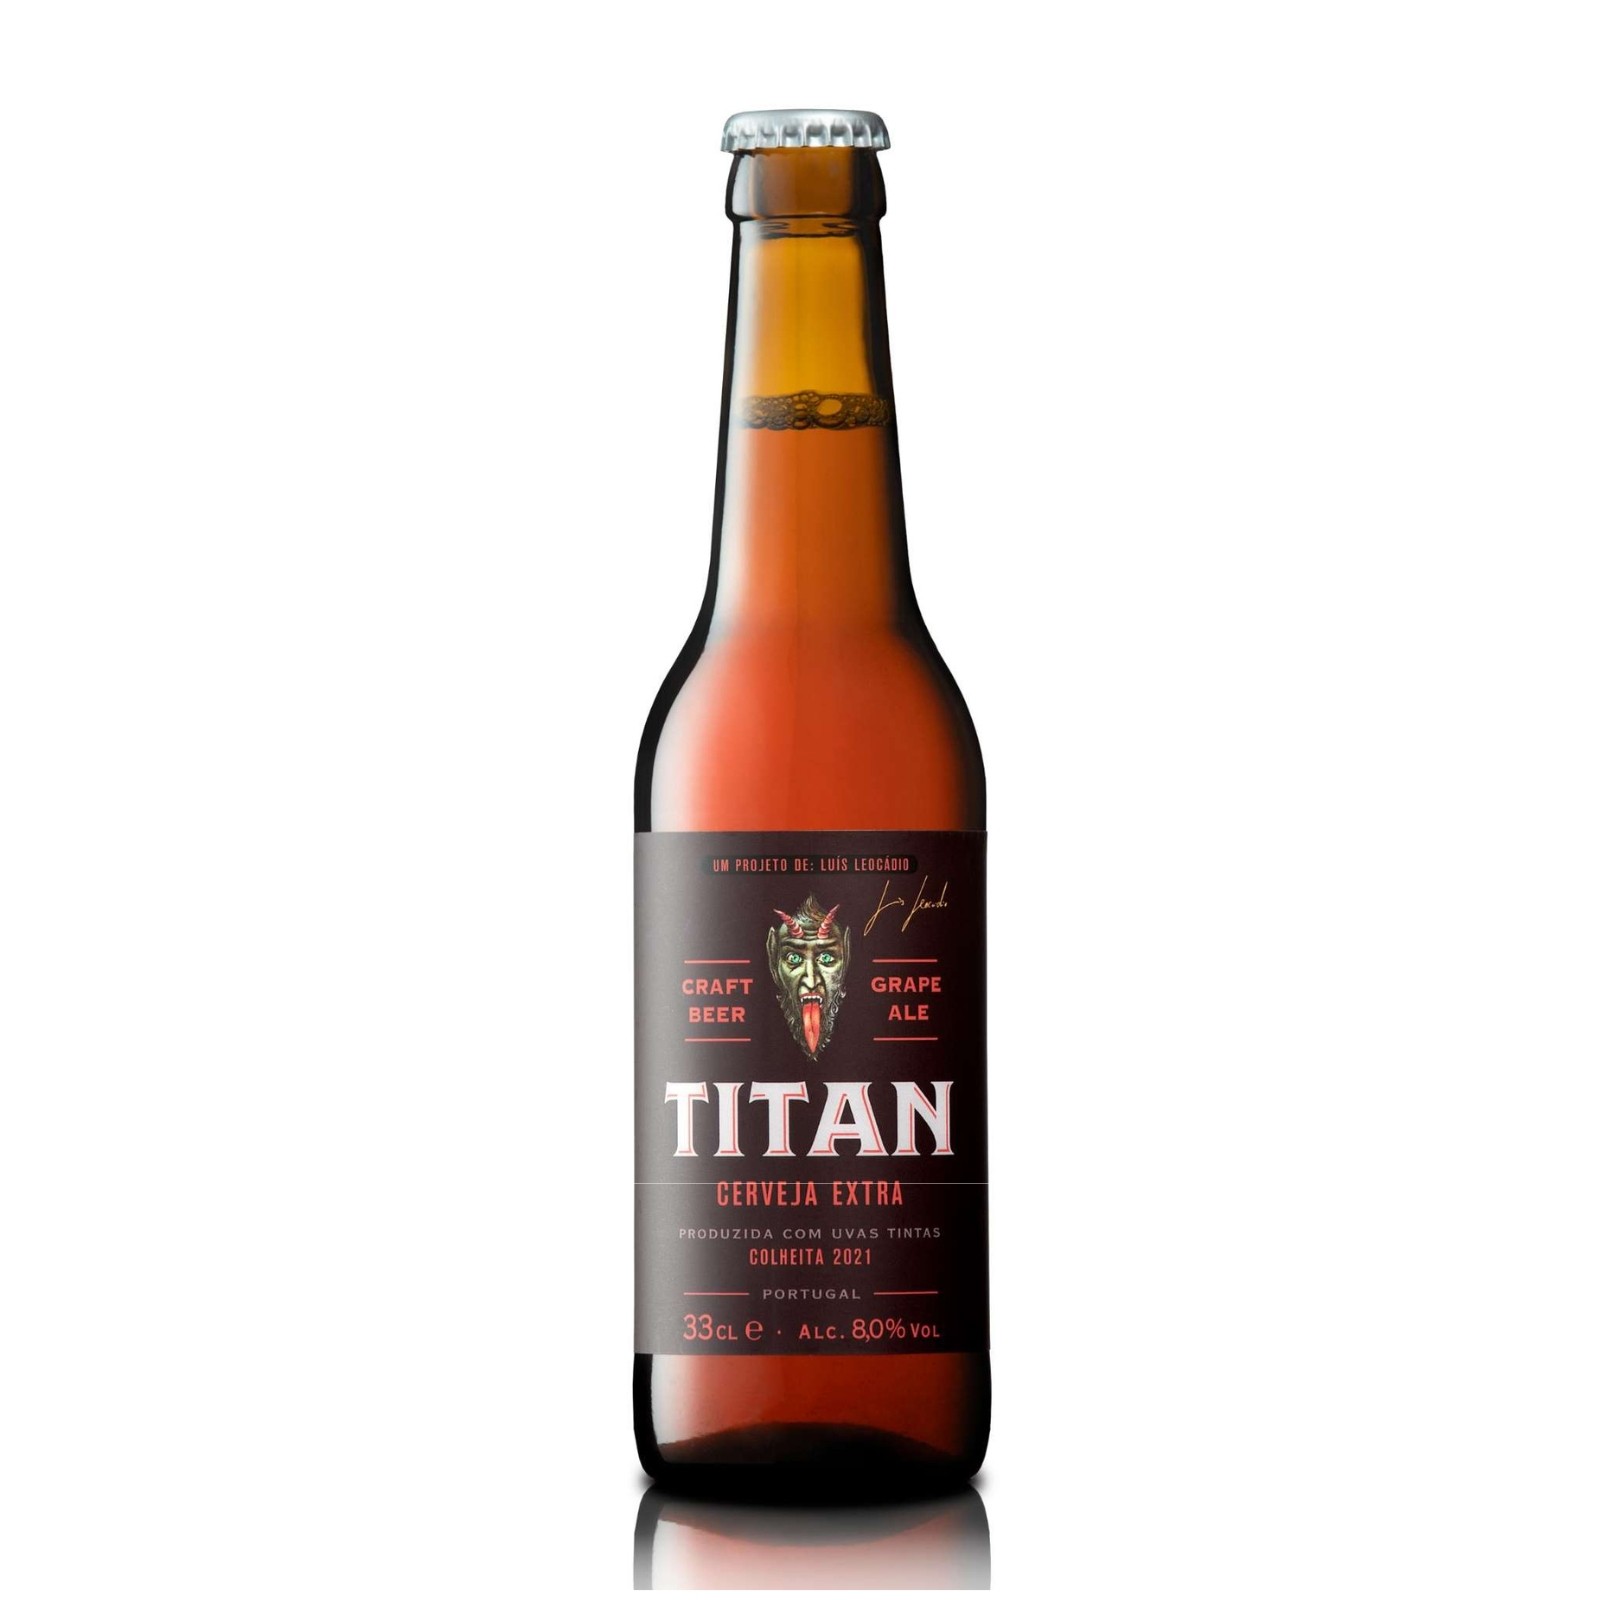 Titan of Douro Red Grapes Grape Ale